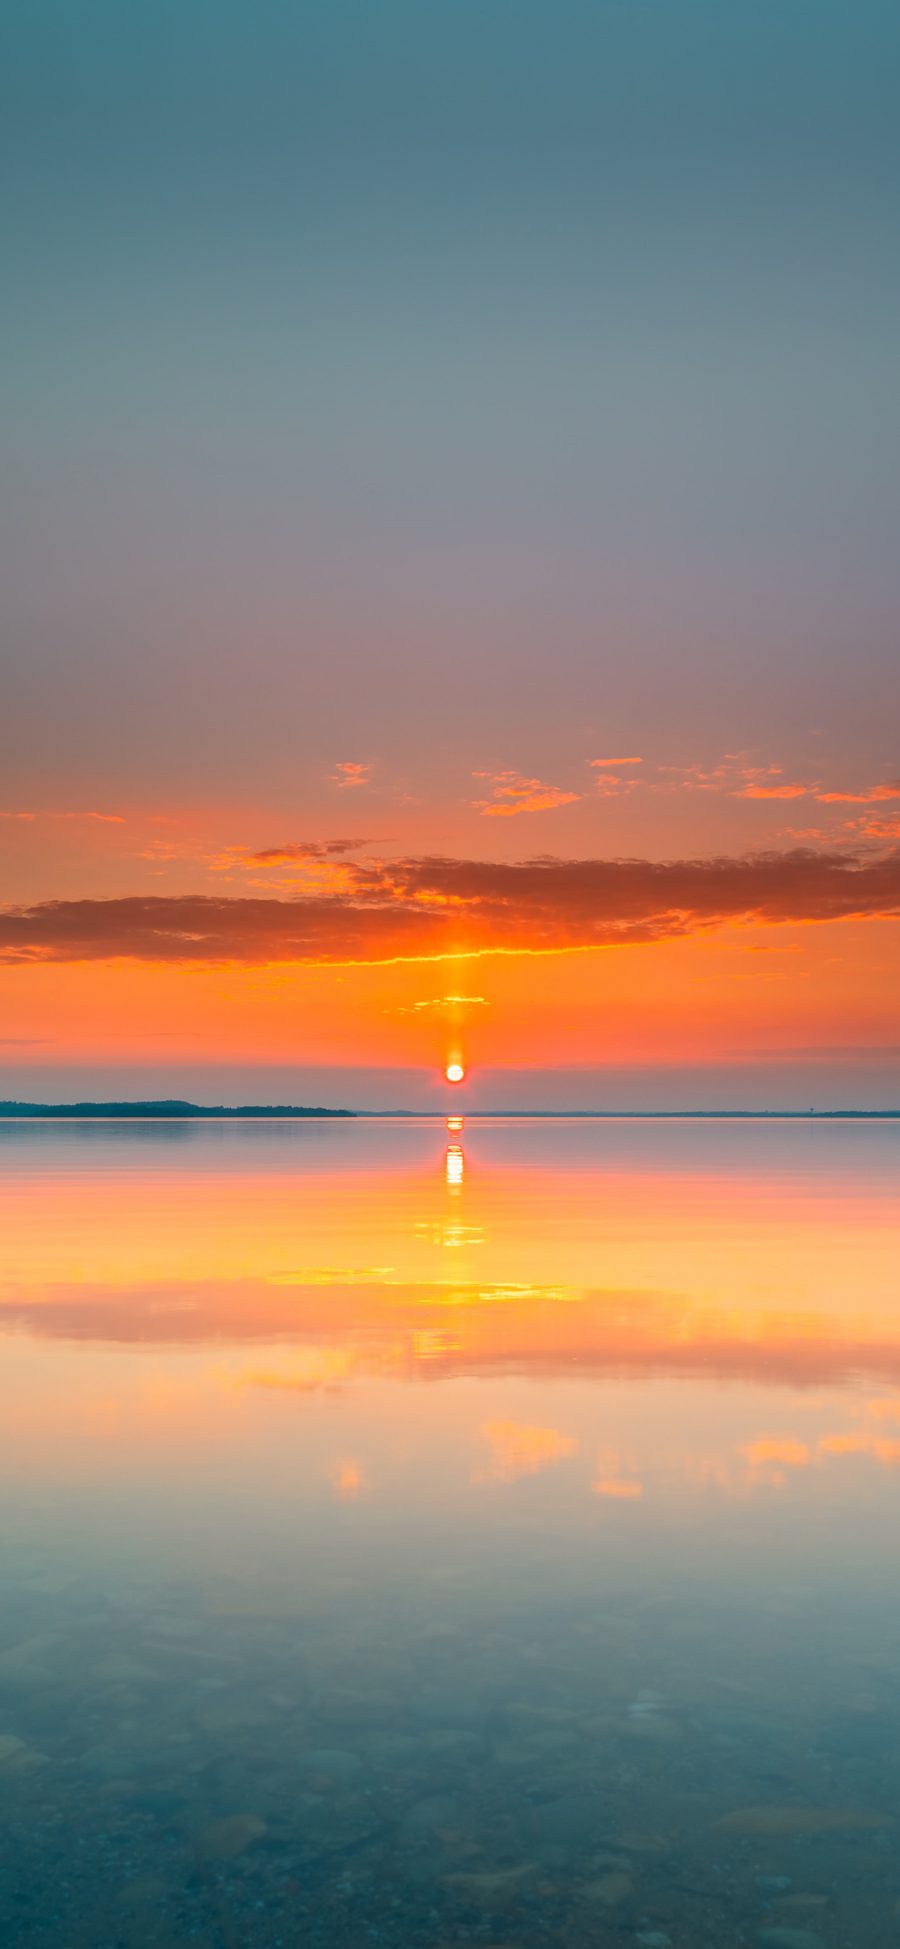 [2436×1125]夕阳 日落 海平面 云彩 苹果手机壁纸图片